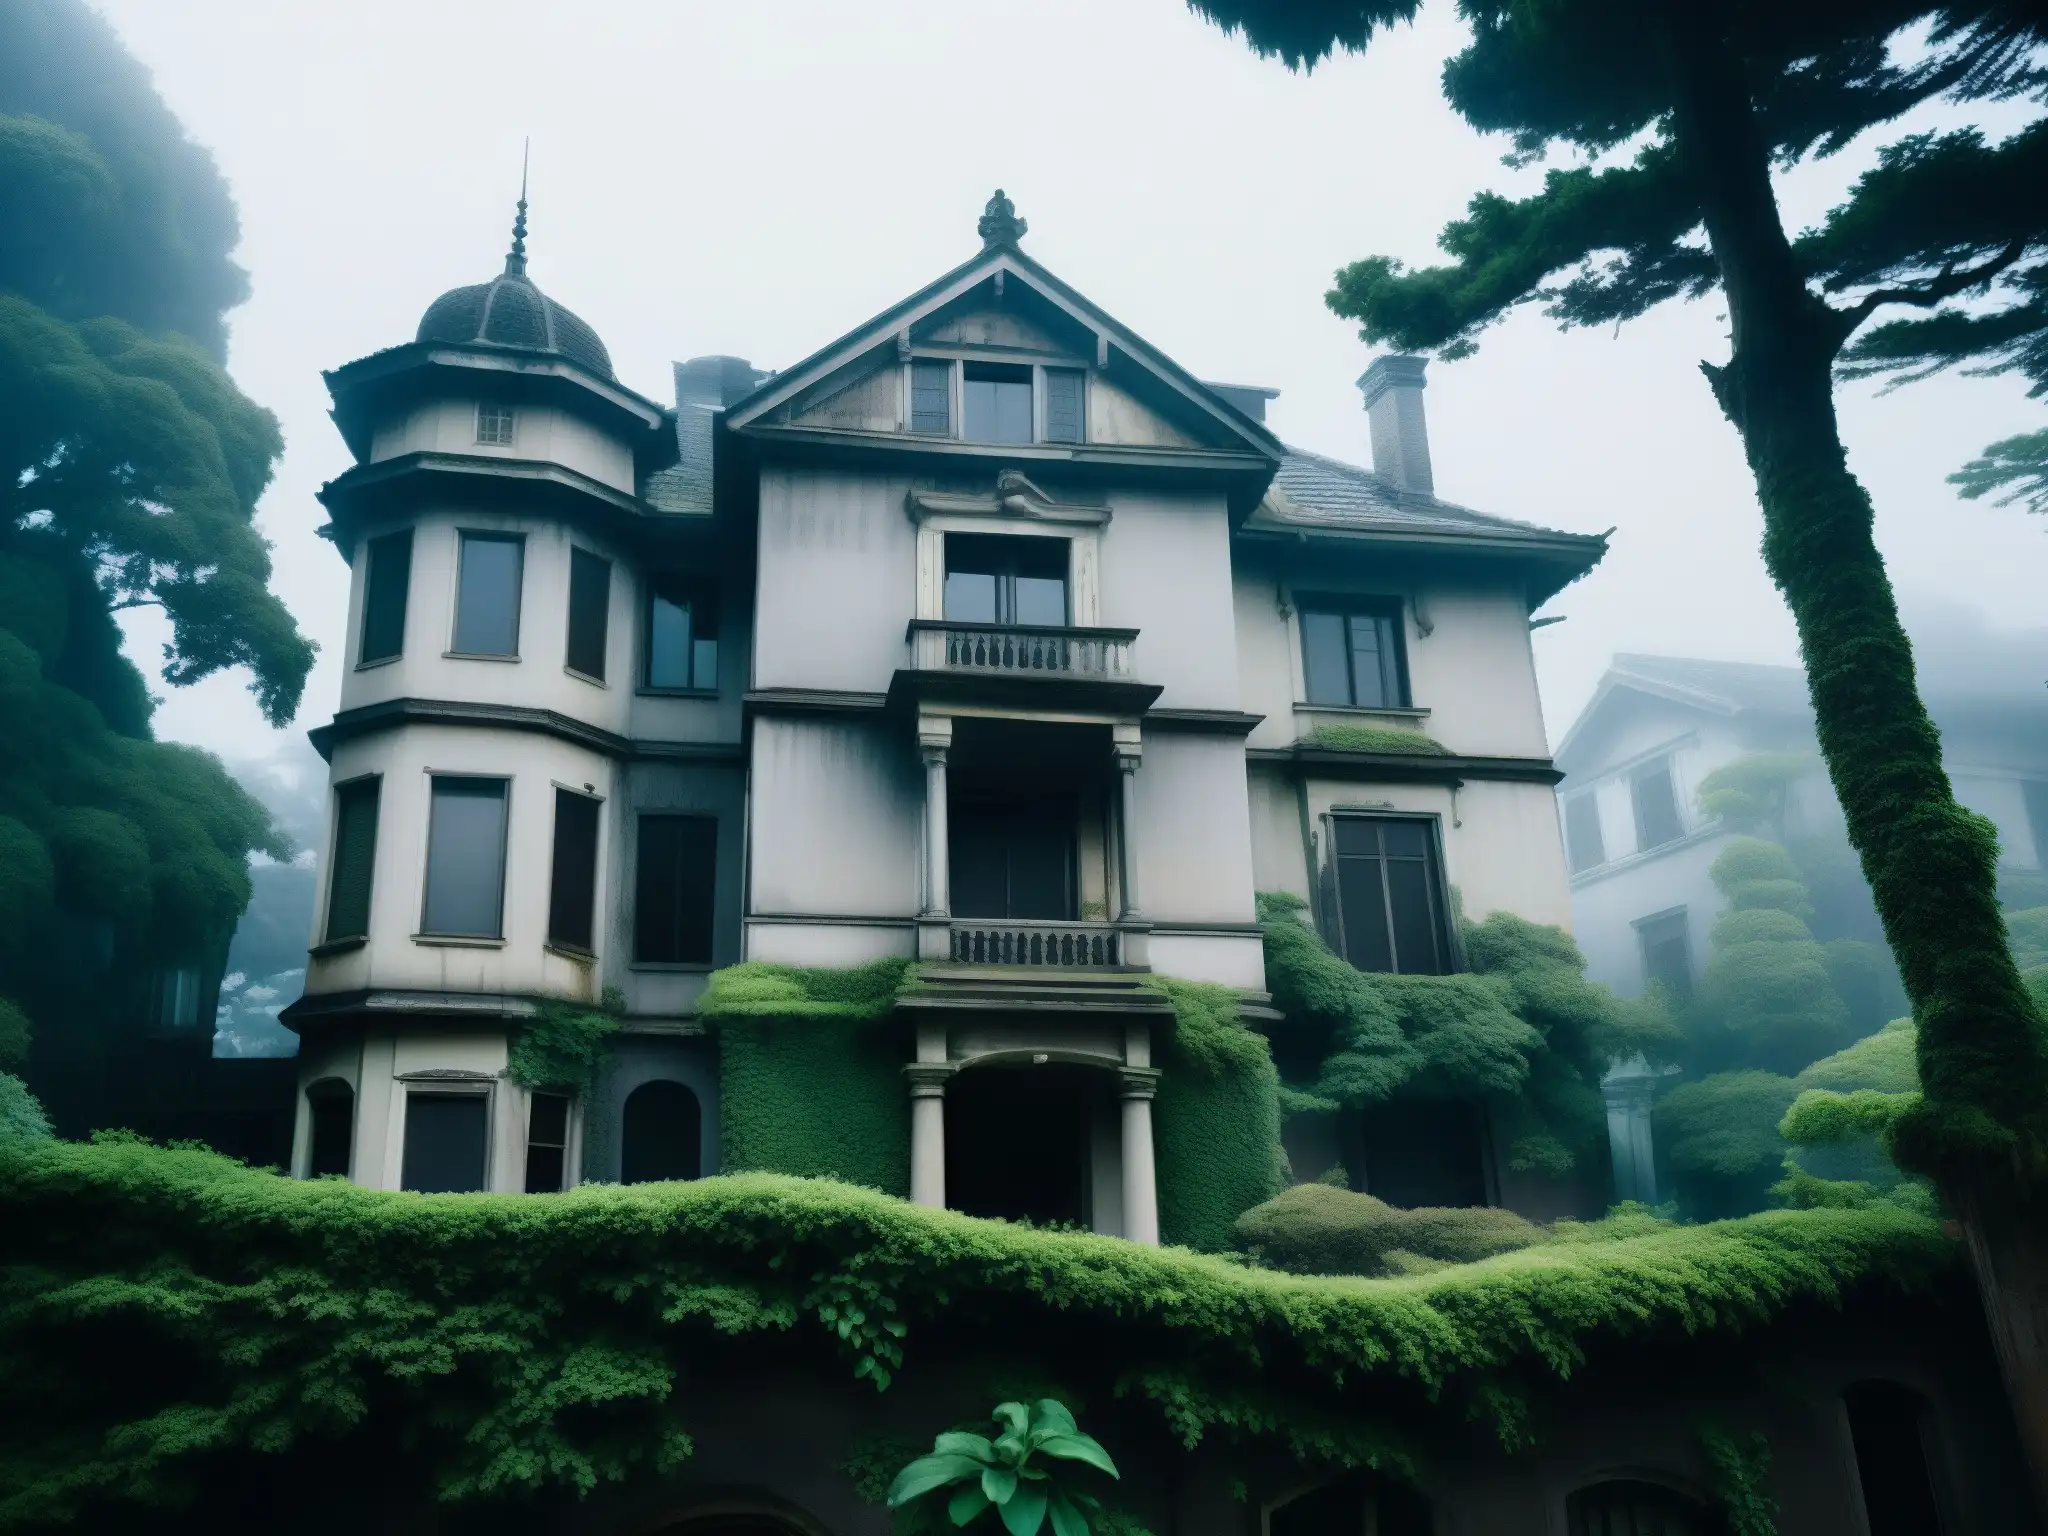 La mansión Himuro envuelta en niebla y rodeada de árboles retorcidos, evocando la psicología del miedo en Himuro Mansion